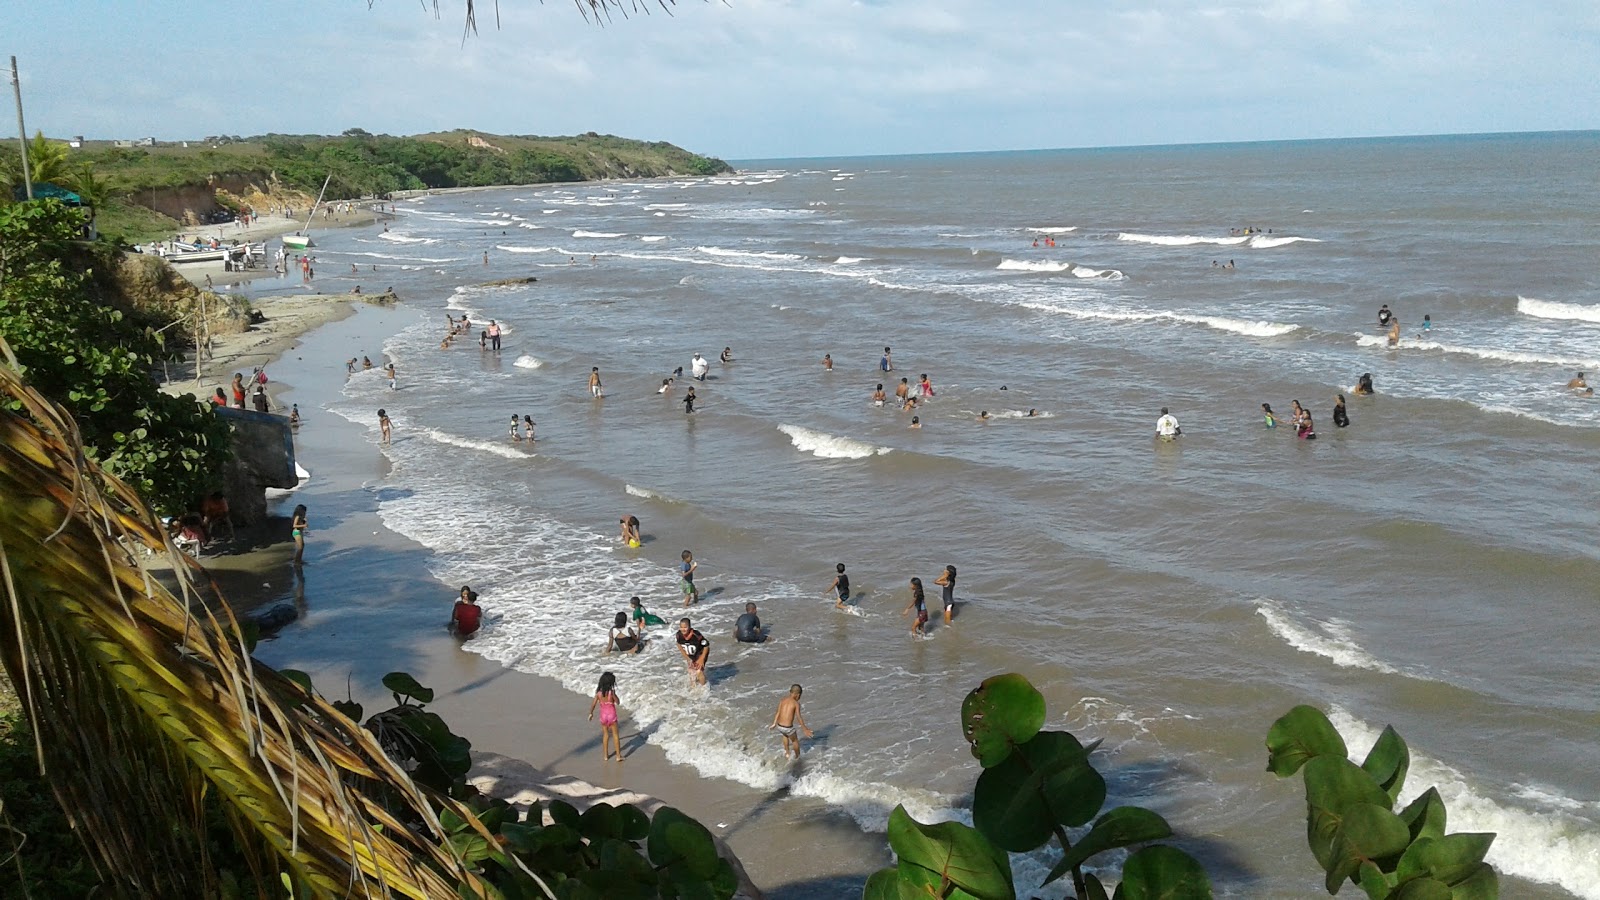 La Bocana 海滩的照片 带有碧绿色水表面